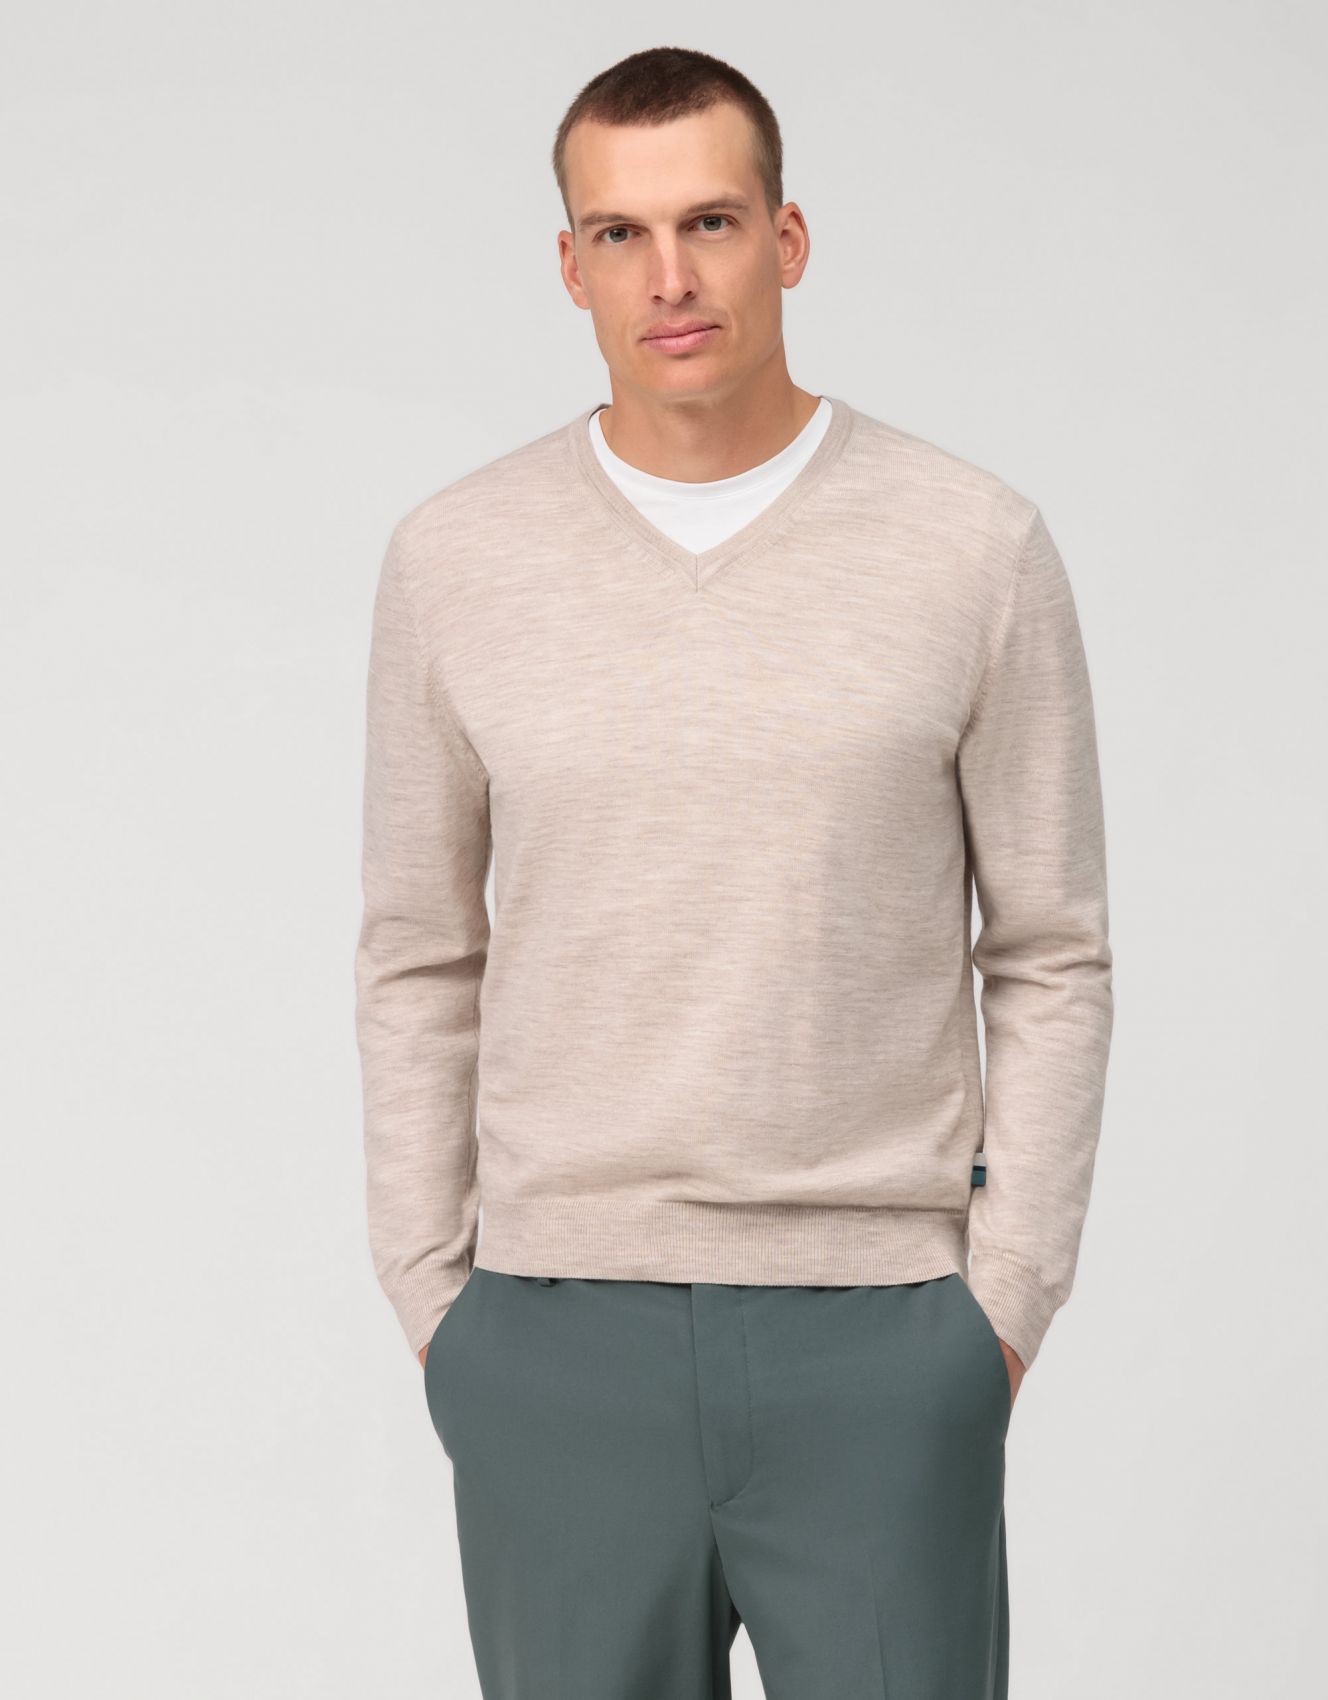 Men's Olymp V-neck Sweater beige - Extrafine Merino Wool Men's clothing